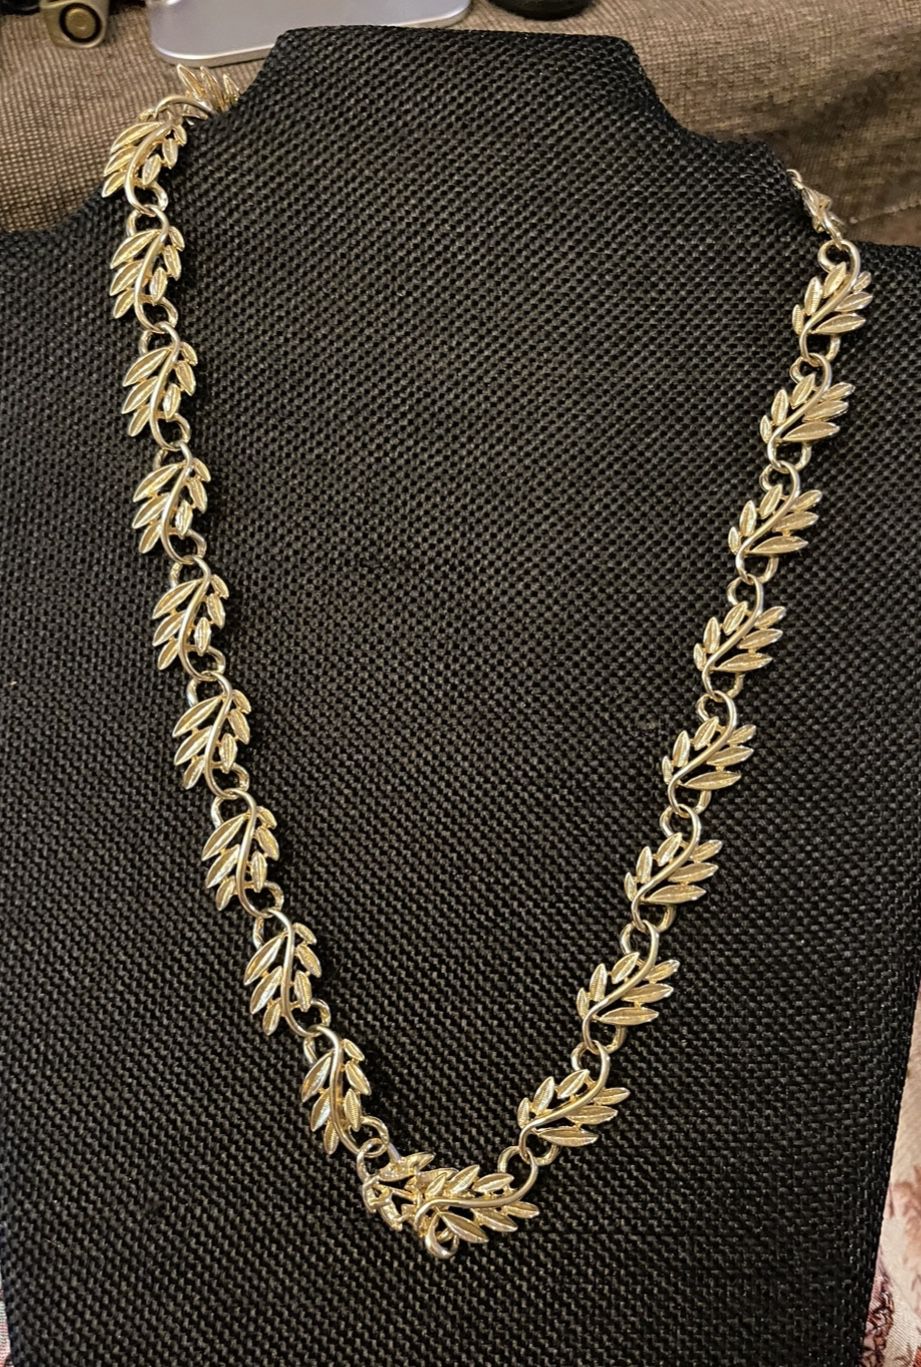 Vintage Napier Leaf Choker Necklace exc condition 